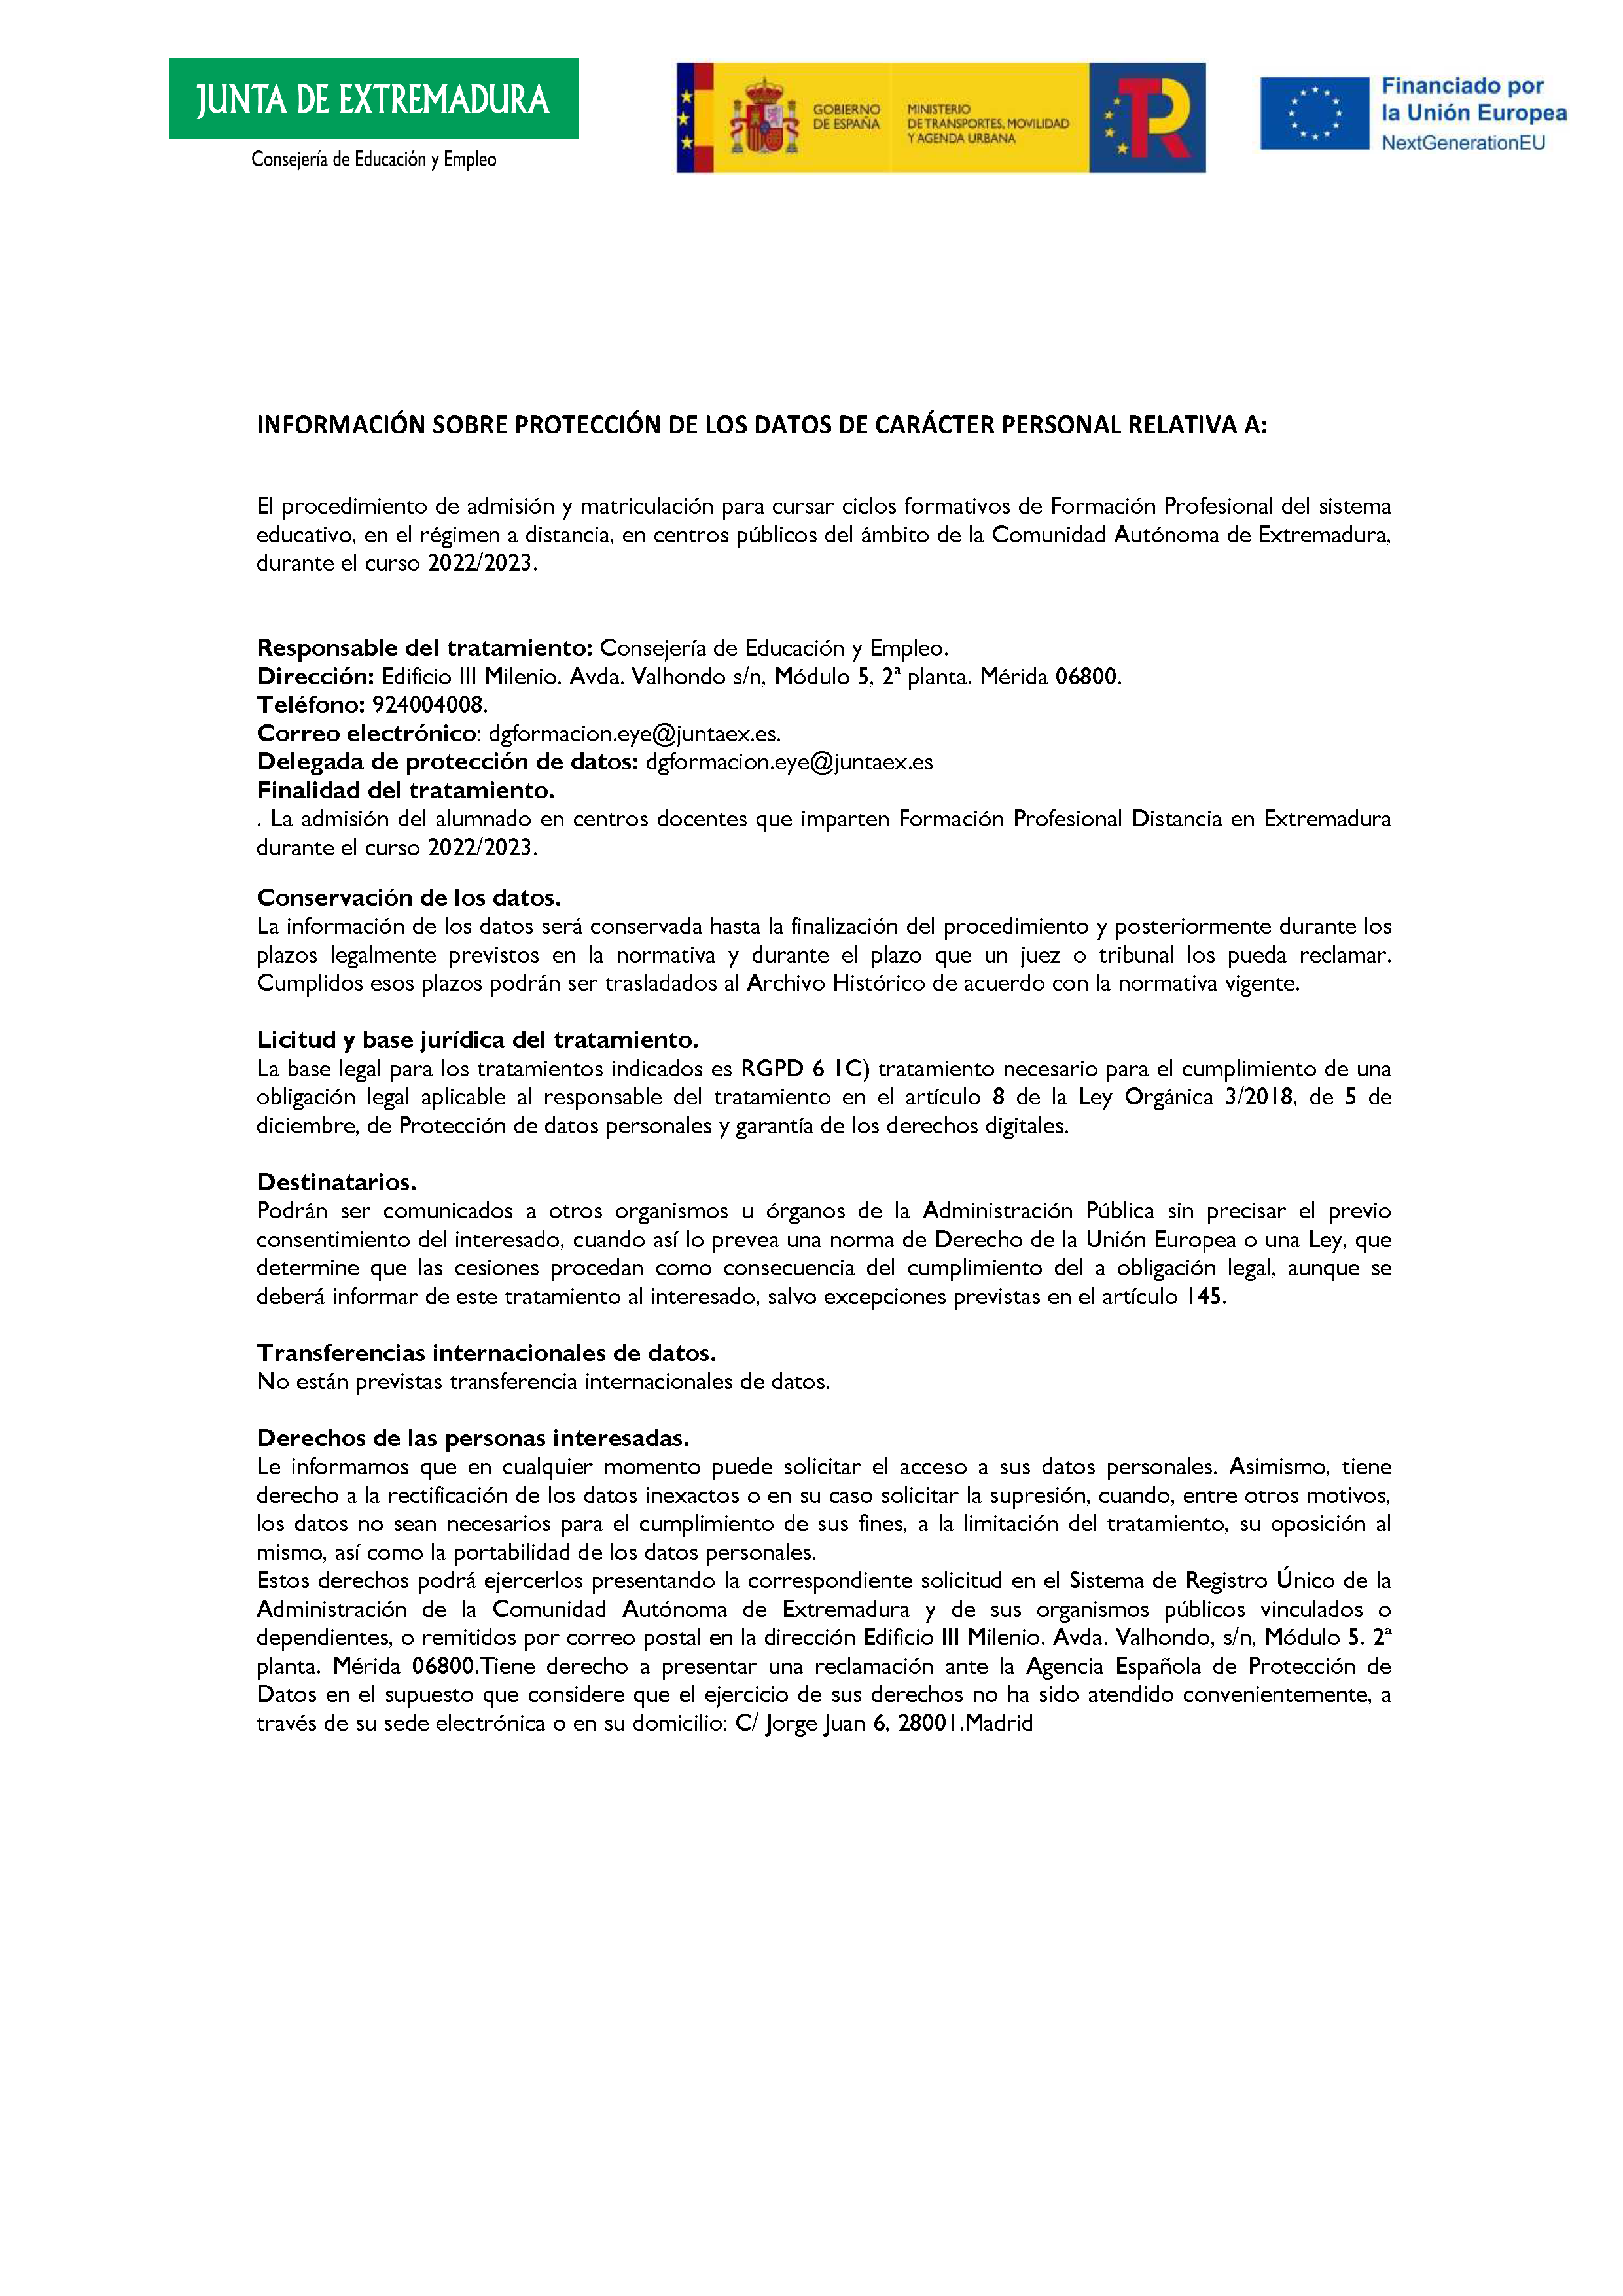 ANEXO FORMACIÓN PROFESIONAL DEL SISTEMA EDUCATIVO RÉGIMEN A DISTANCIA Pag 26